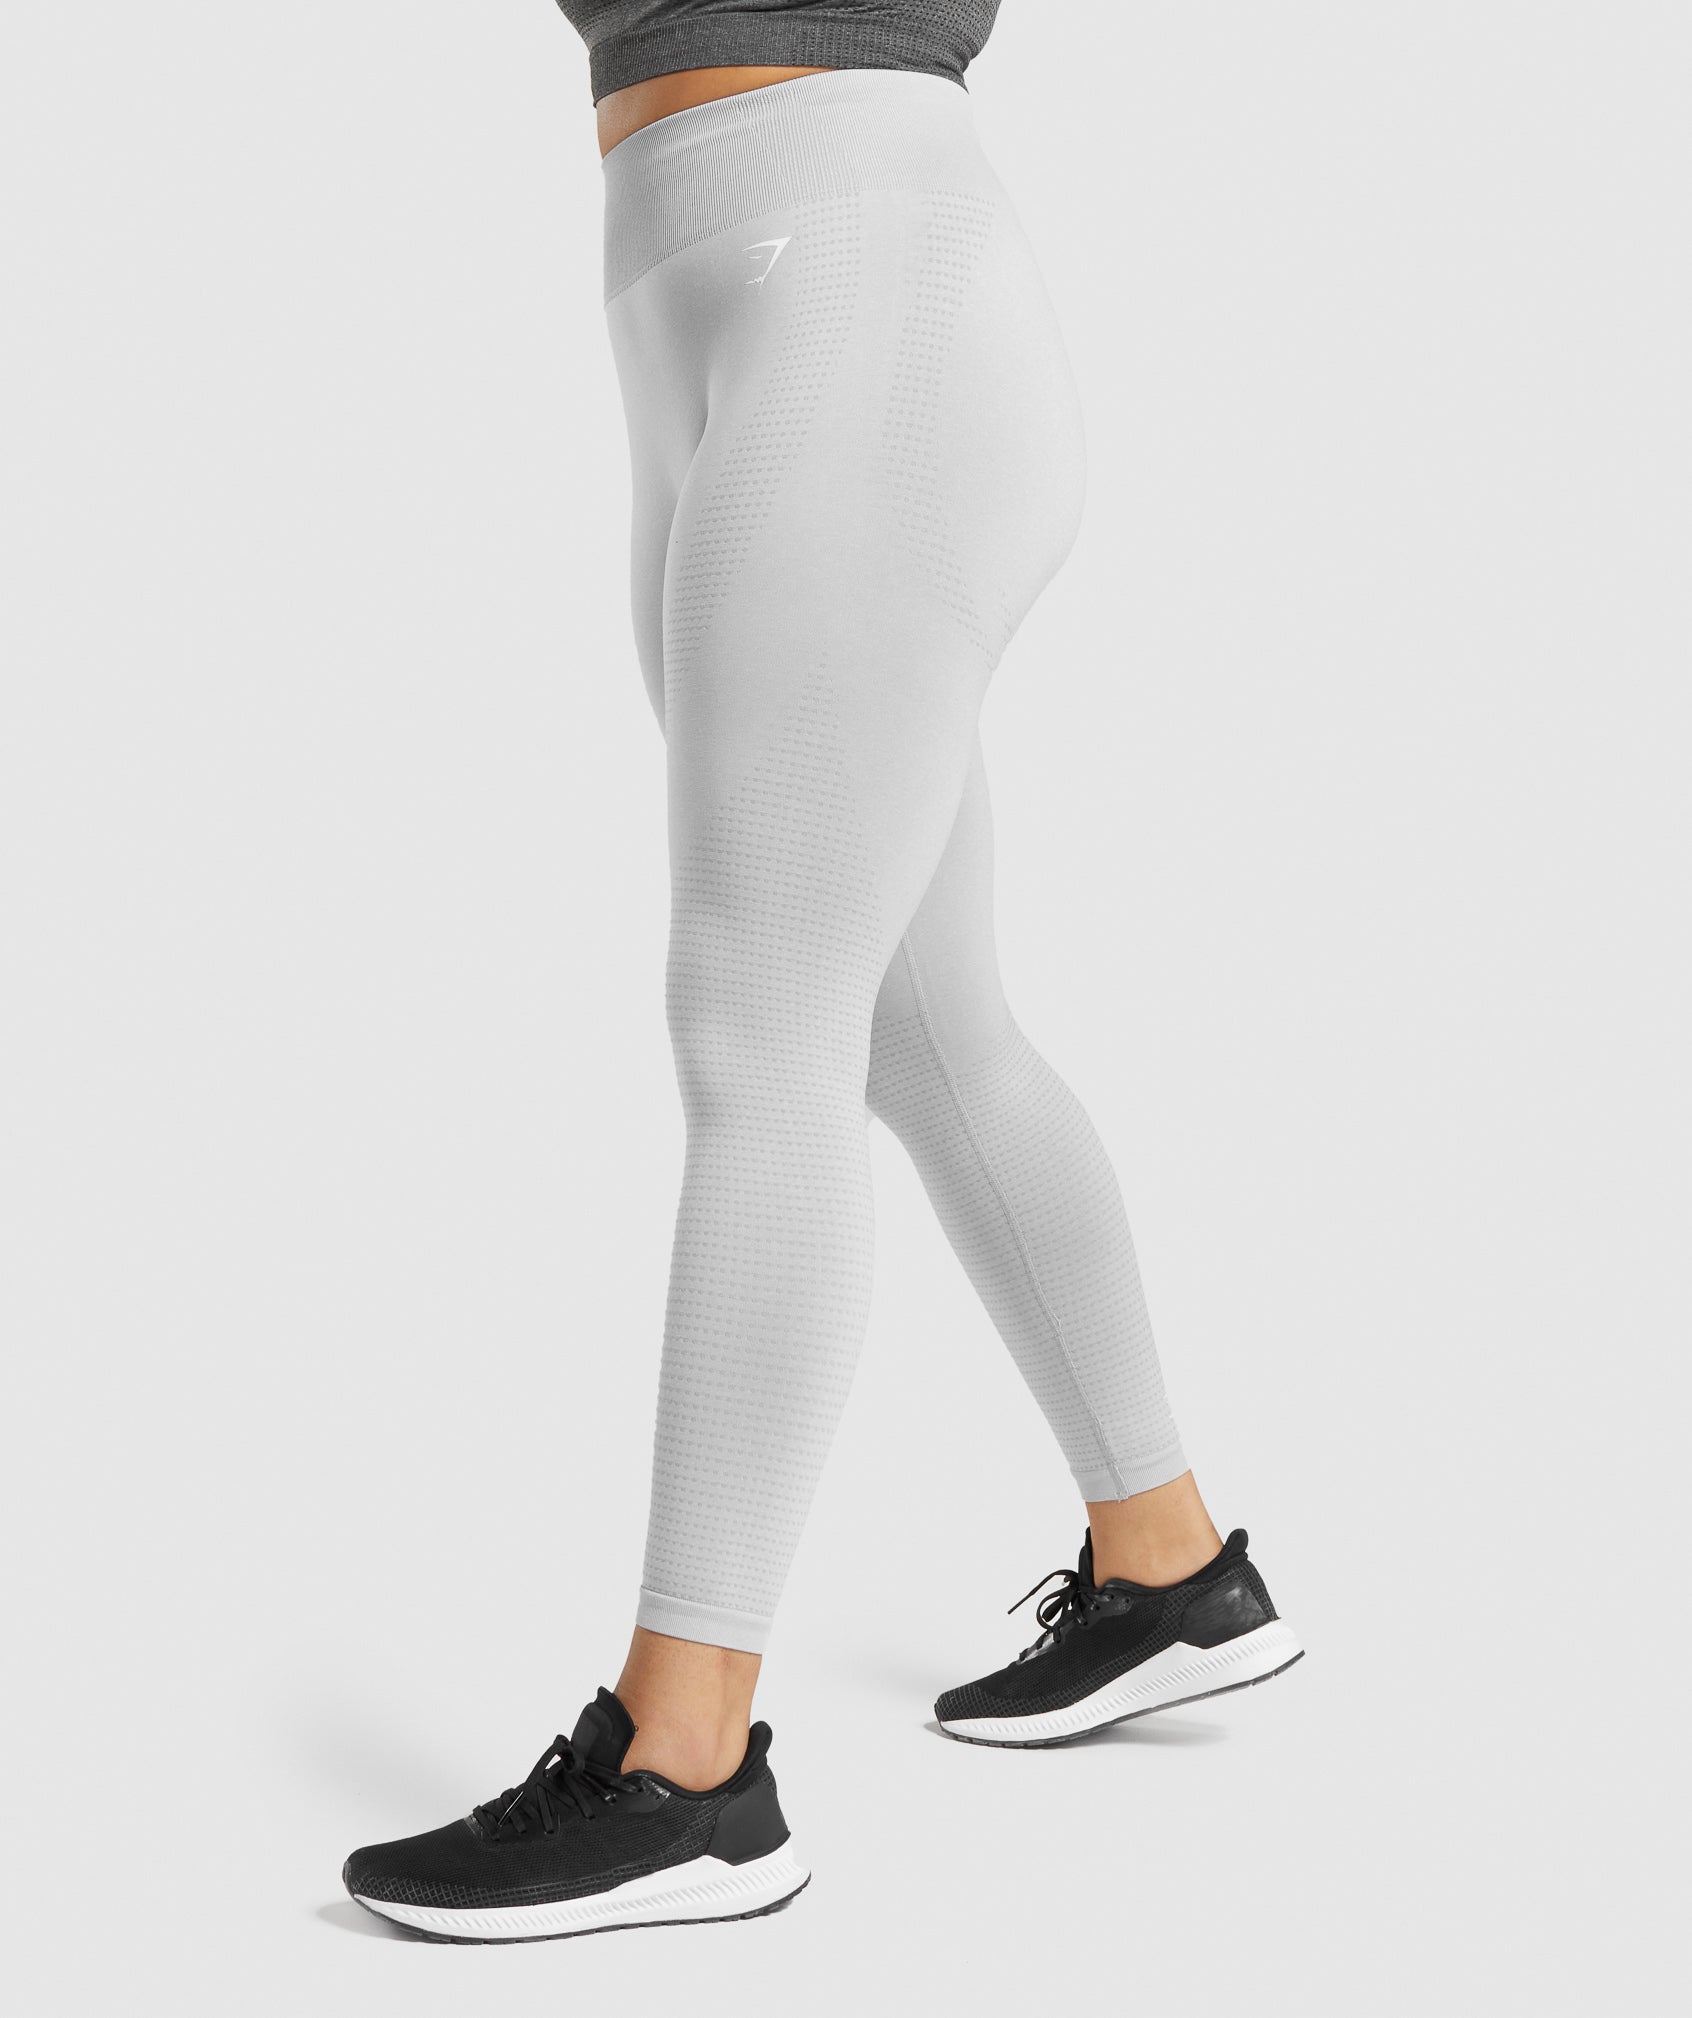 Gymshark Vital Seamless Leggings Gray Size XS - $23 (54% Off Retail) - From  Denise